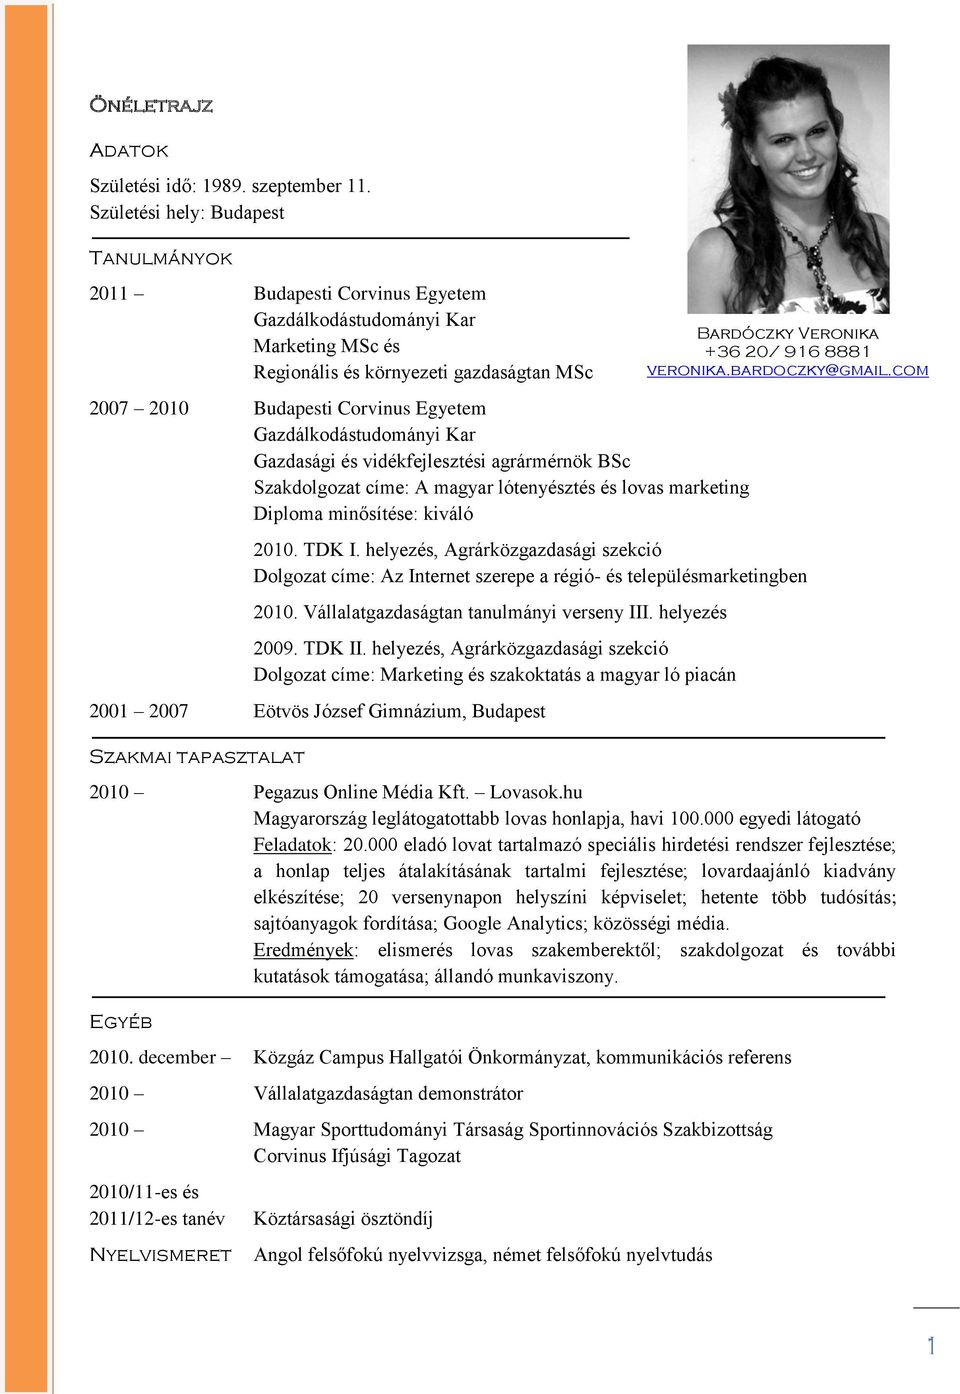 Gazdálkodástudományi Kar Gazdasági és vidékfejlesztési agrármérnök BSc Szakdolgozat címe: A magyar lótenyésztés és lovas marketing Diploma minősítése: kiváló 2010. TDK I.